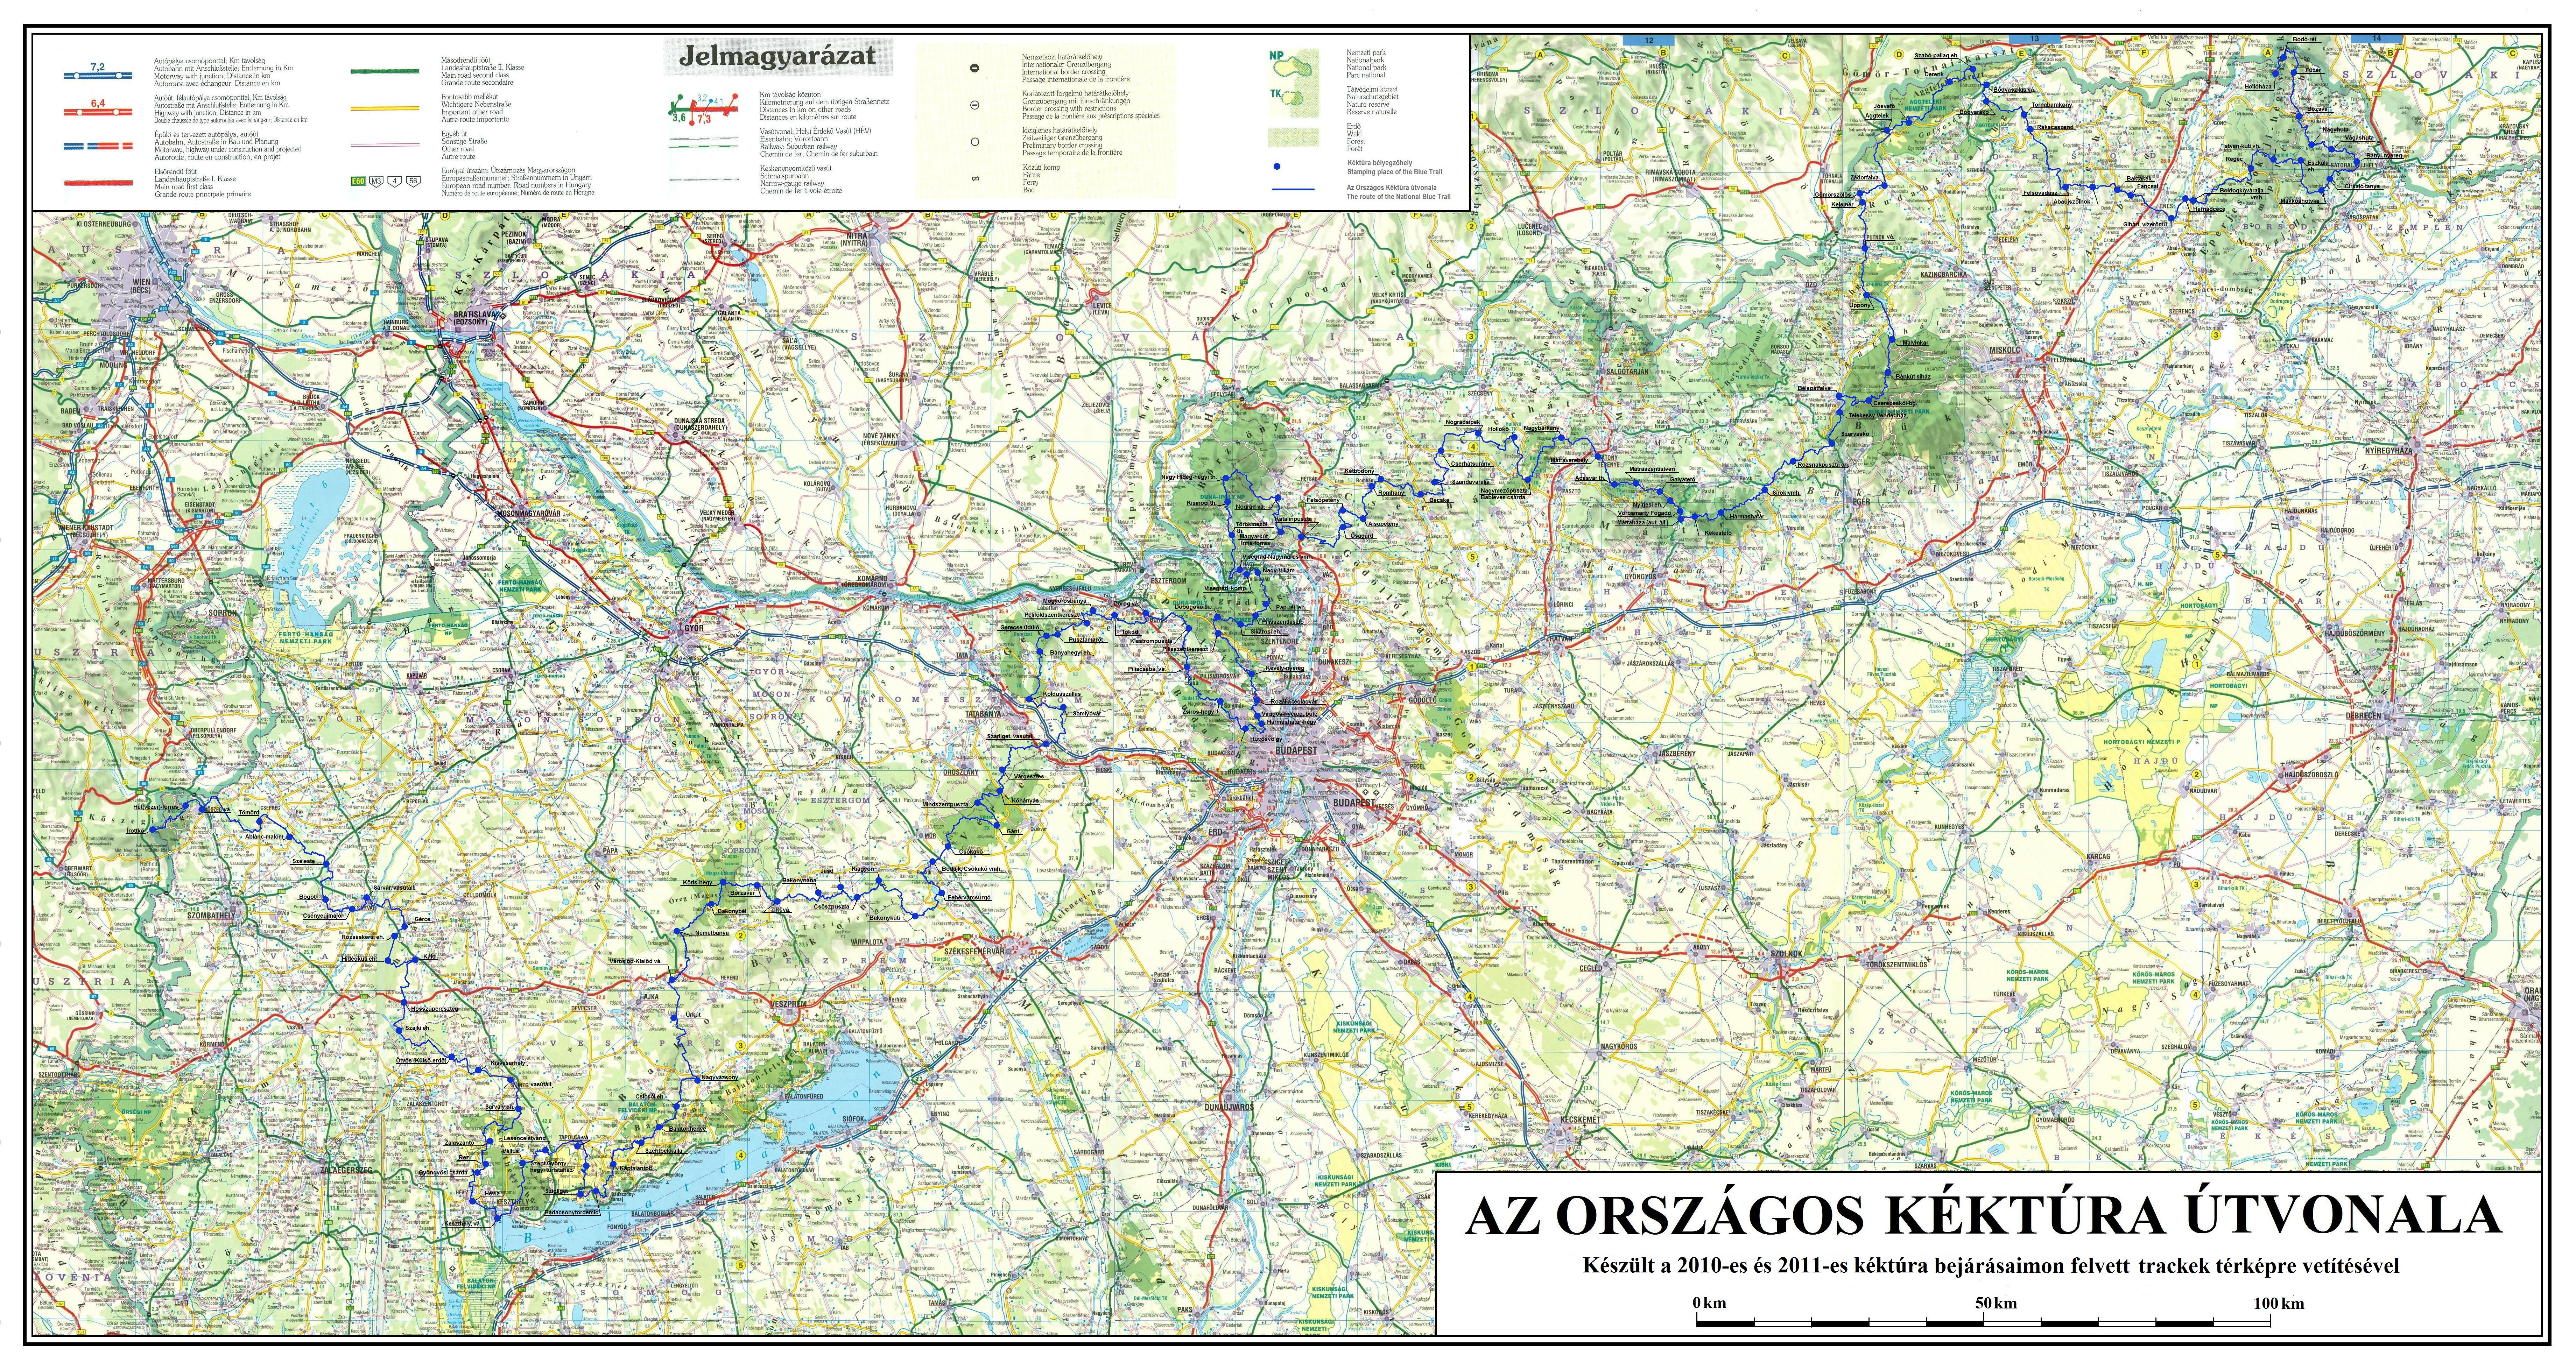 nagyfelbontású magyarország térkép KÉKTÚRA HONLAP   Az Országos Kéktúra kezdetei nagyfelbontású magyarország térkép